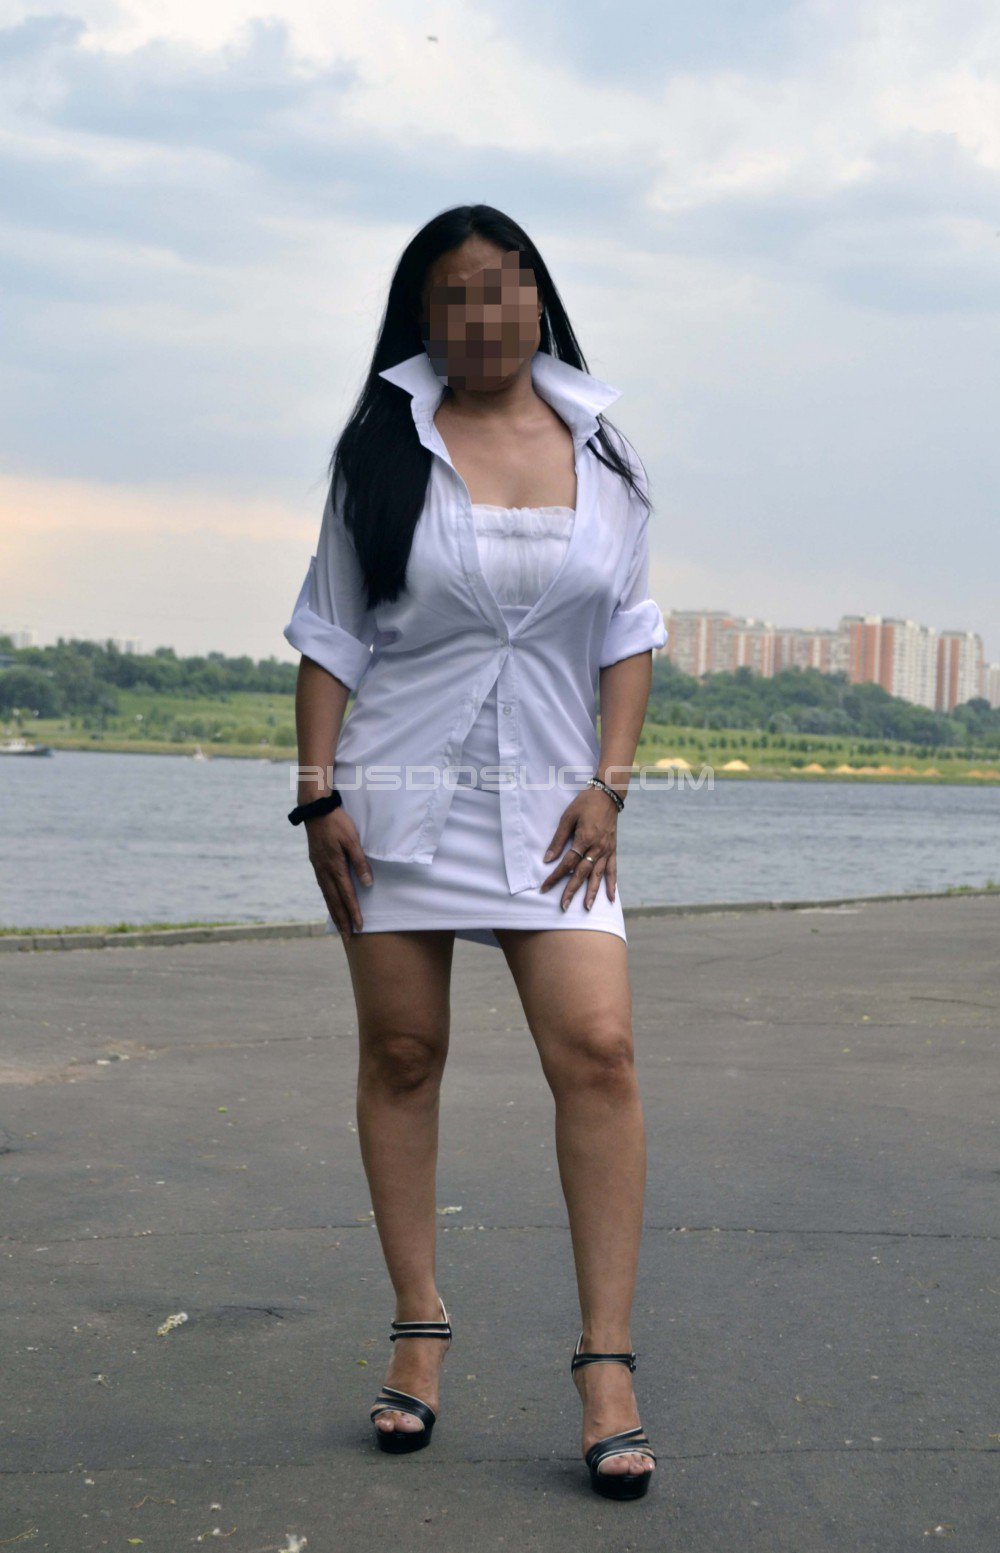 Проститутка Лина возрастом 27 с ростом 168 см для интима в Москве